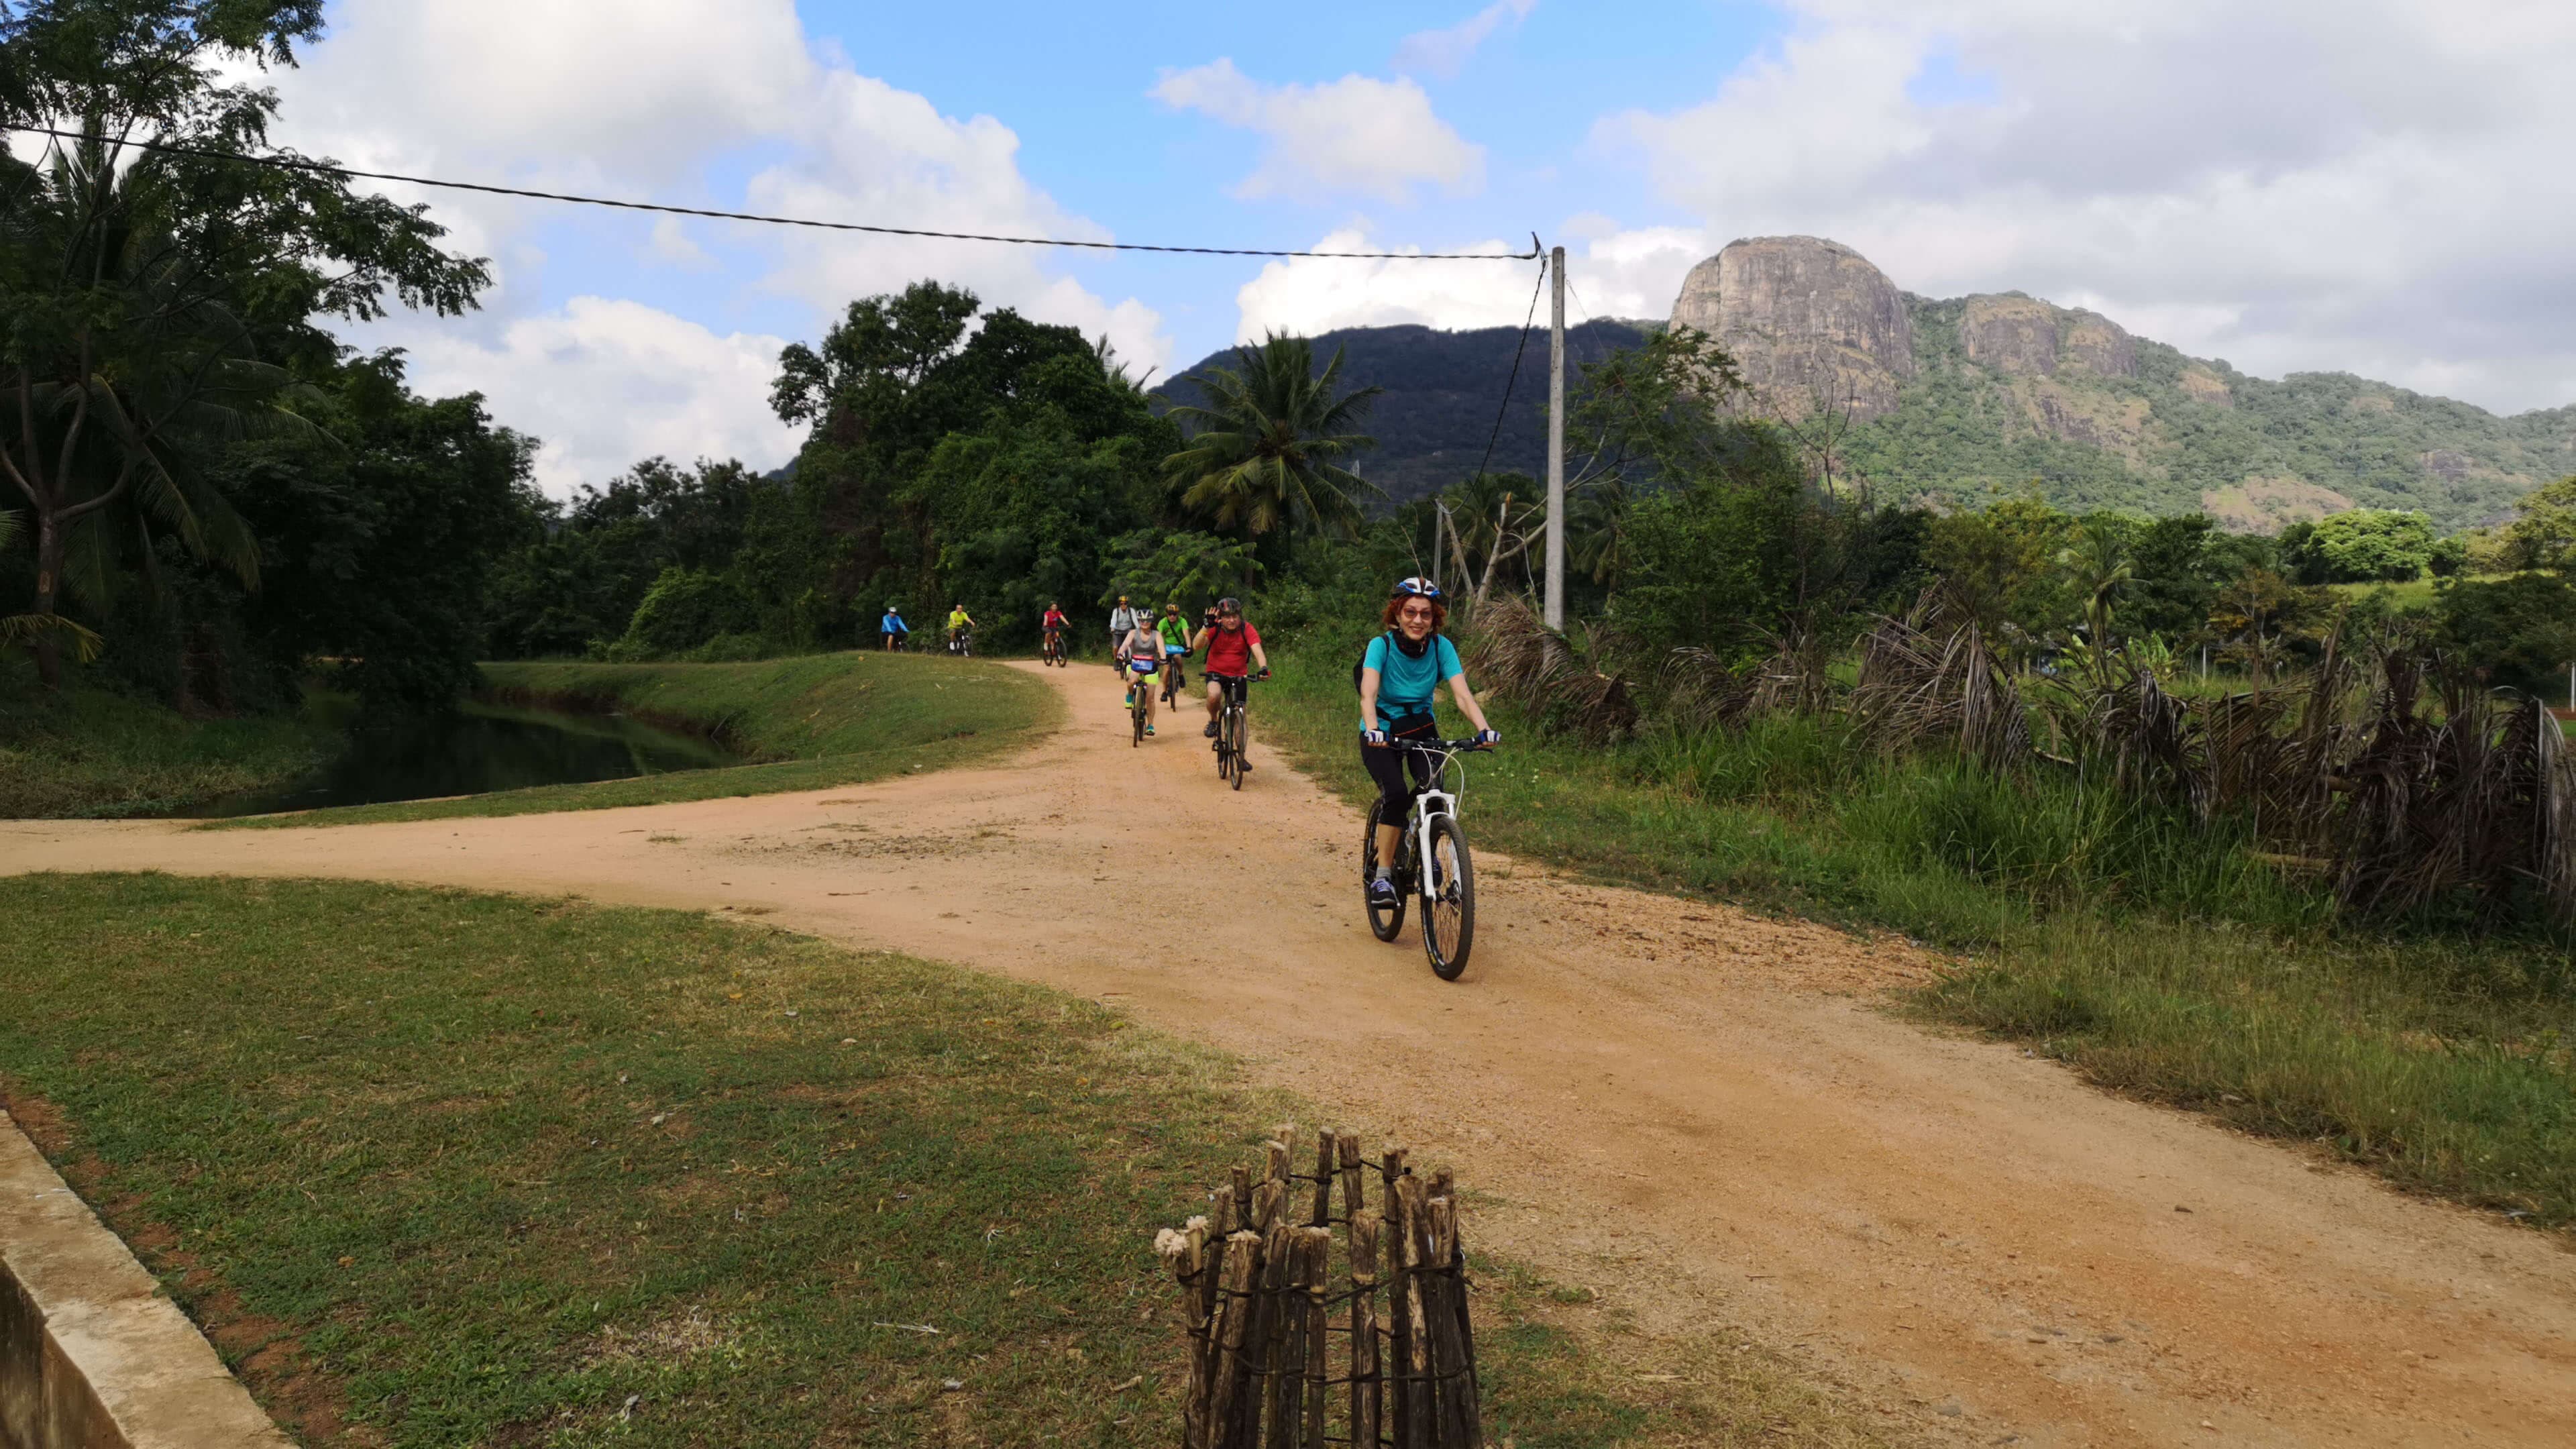 Una imagen de andar en bicicleta los ciclistas explorando el desierto y la naturaleza en Polonnaruwa Sri Lanka